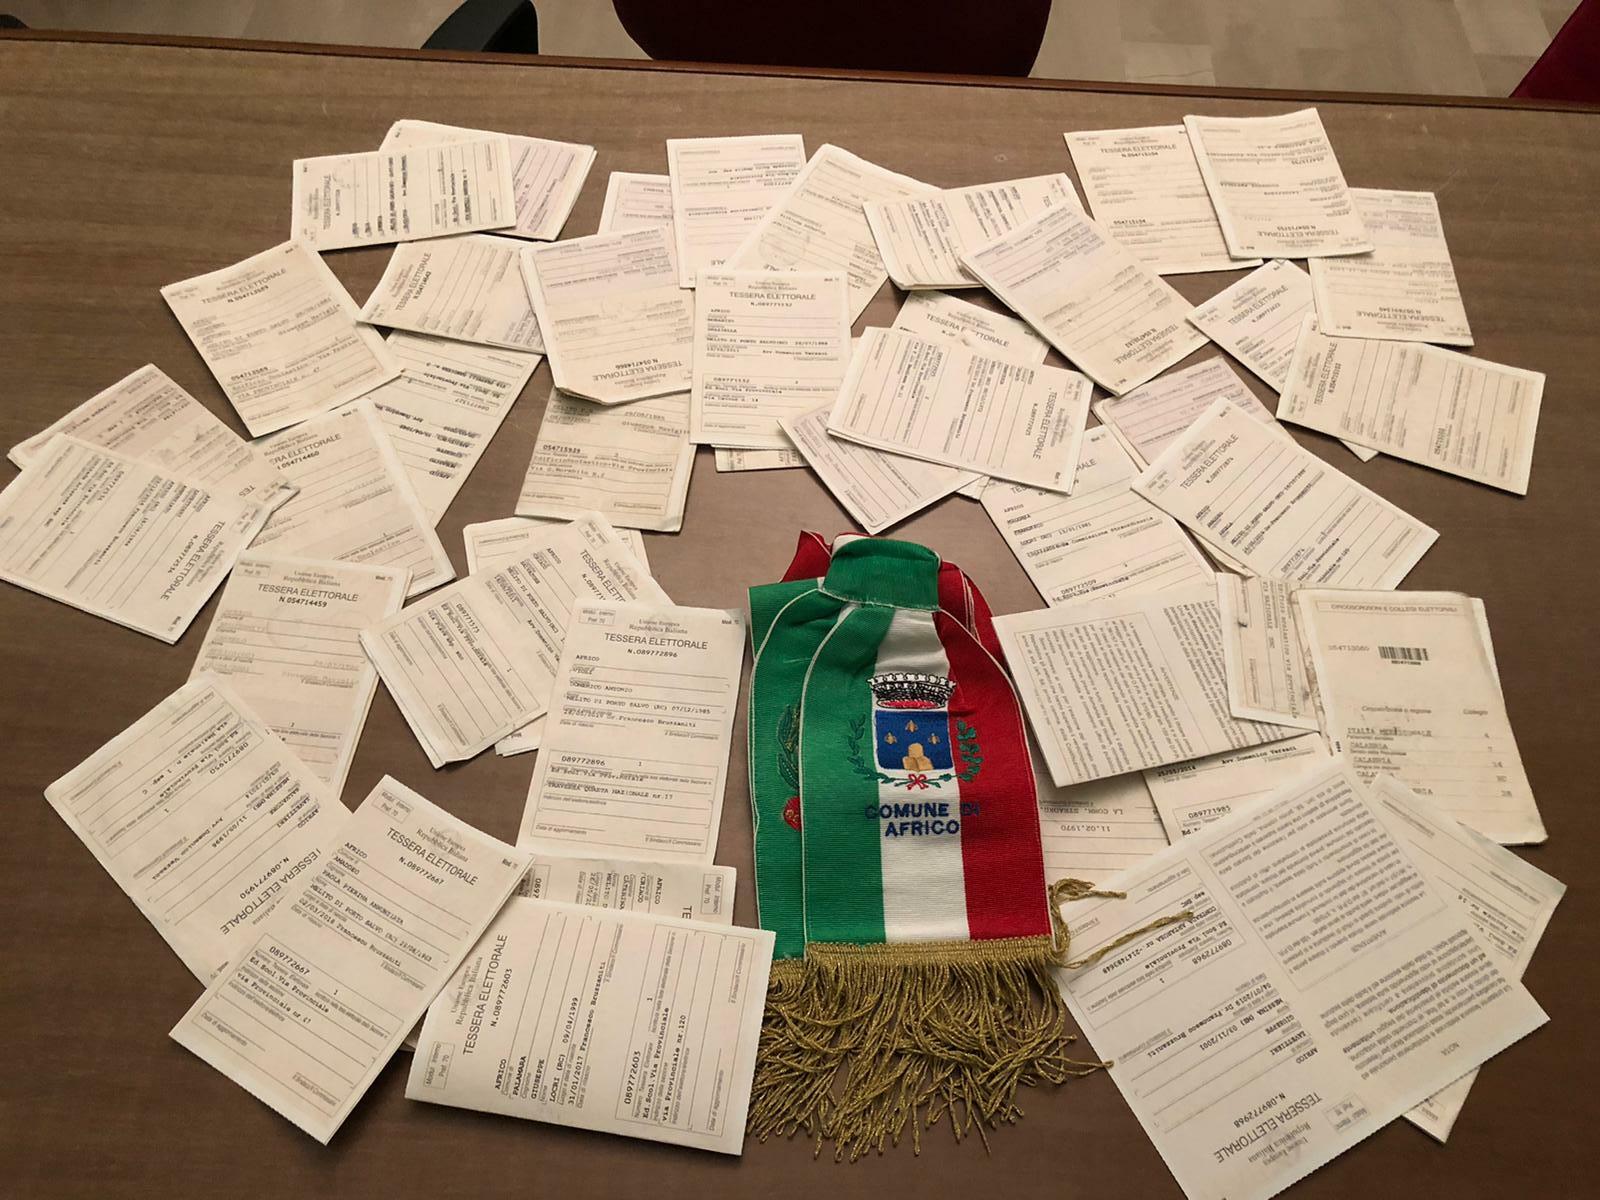 Cittadini consegnano schede elettorali africo